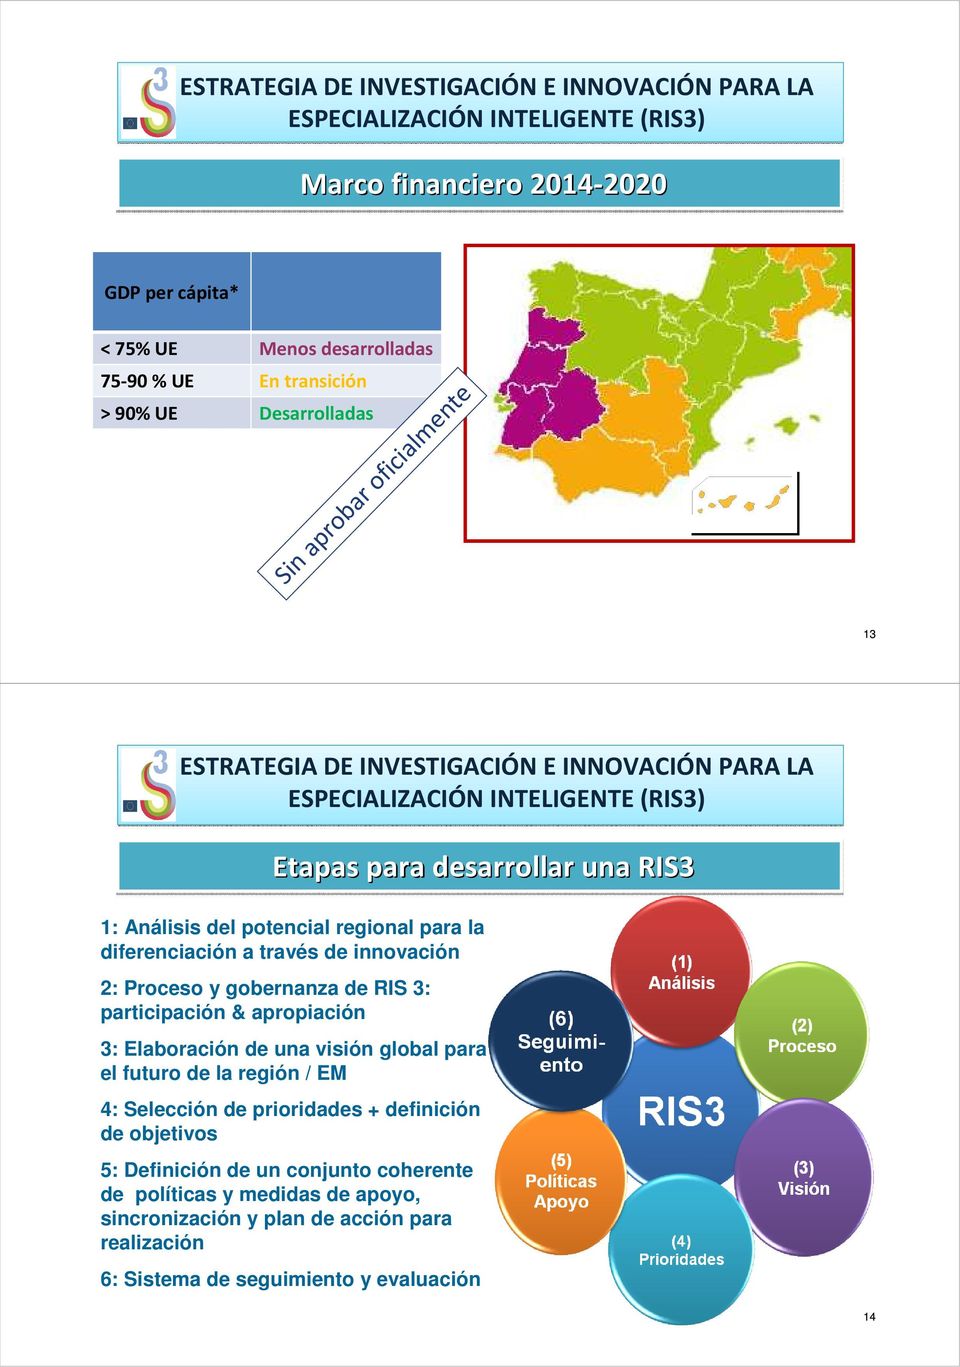 RIS 3: participación & apropiación Etapas para desarrollar una RIS3 3: Elaboración de una visión global para el futuro de la región / EM 4: Selección de prioridades +